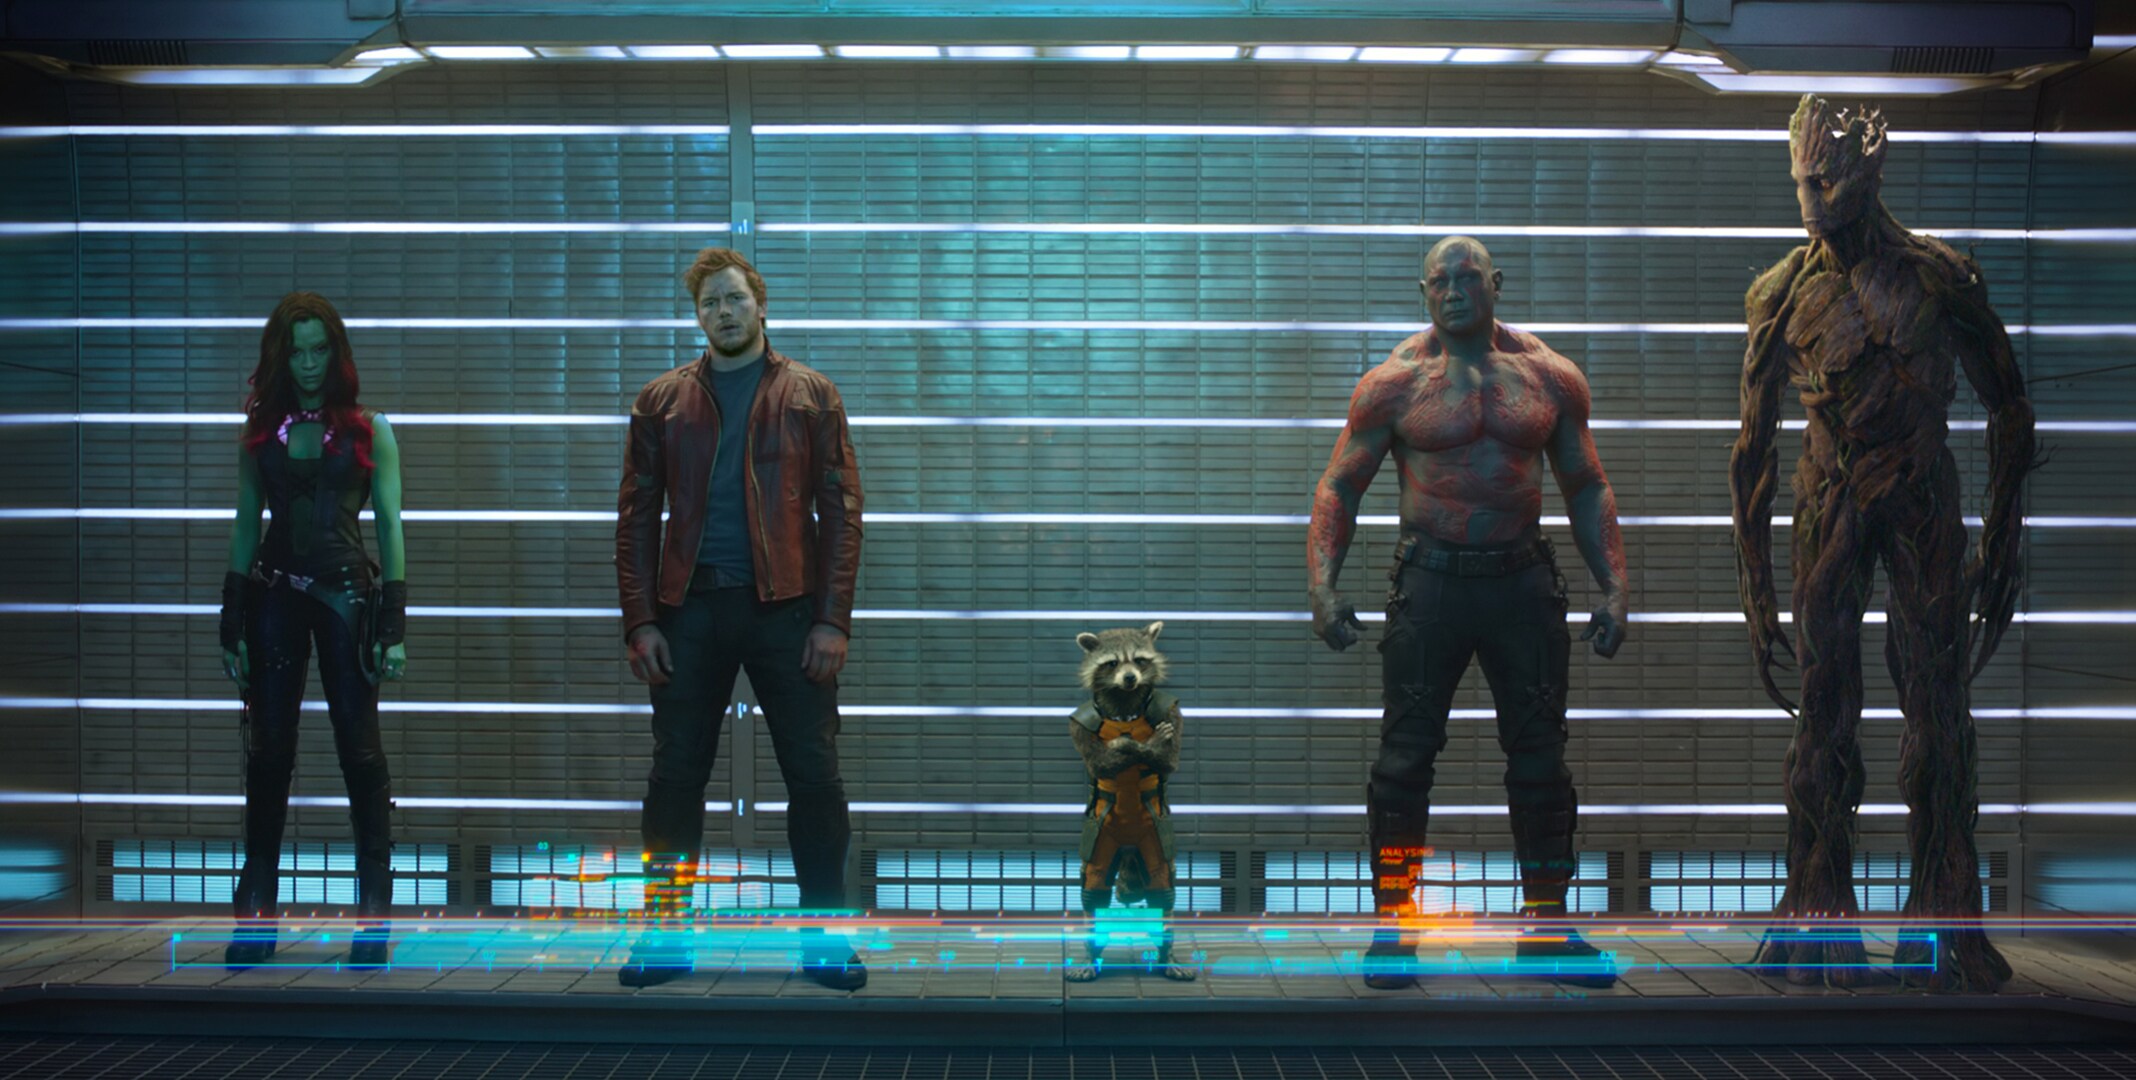 Zoë Saldaña as Gamora, Chris Pratt as Quill, Bradley Cooper as Rocket (Raccoon), Dave Bautista as Drax, and Vin Diesel as Groot imprisoned